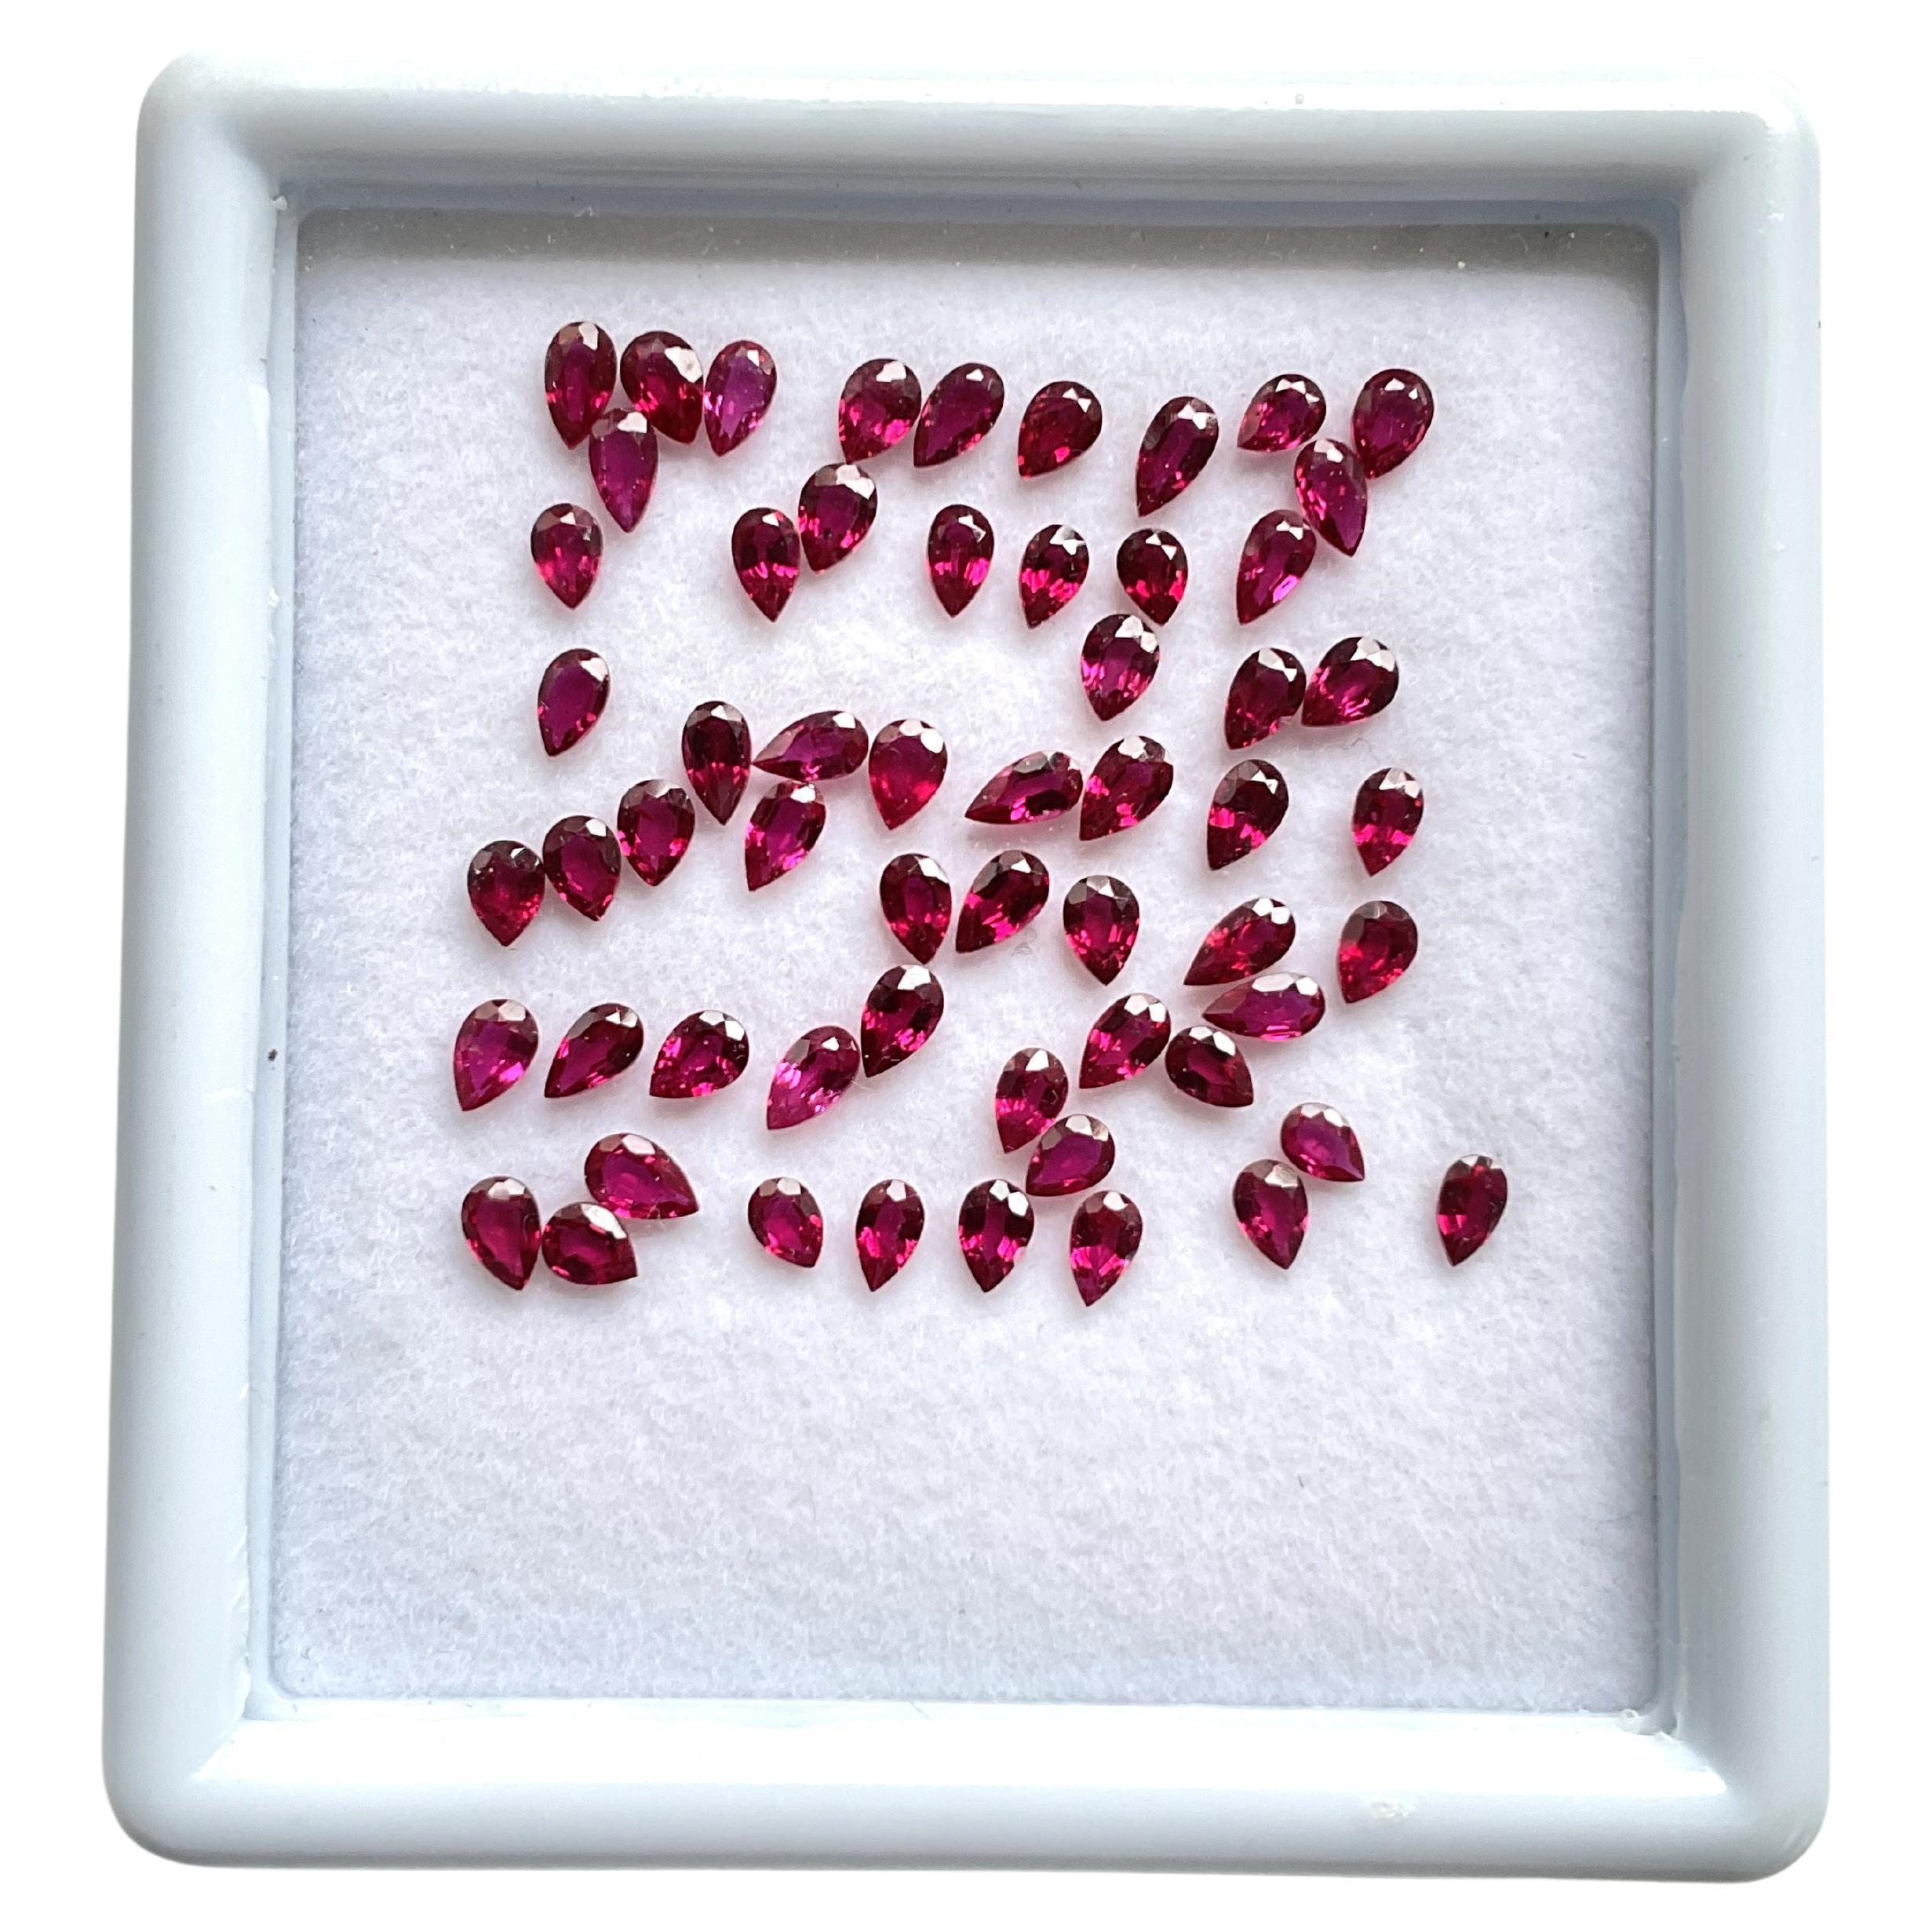 8.21 Carats Mozambique Ruby Top Quality Pear Cut stone No Heat Natural Gemstone (Rubis du Mozambique de qualité supérieure, taille poire, sans chaleur) en vente